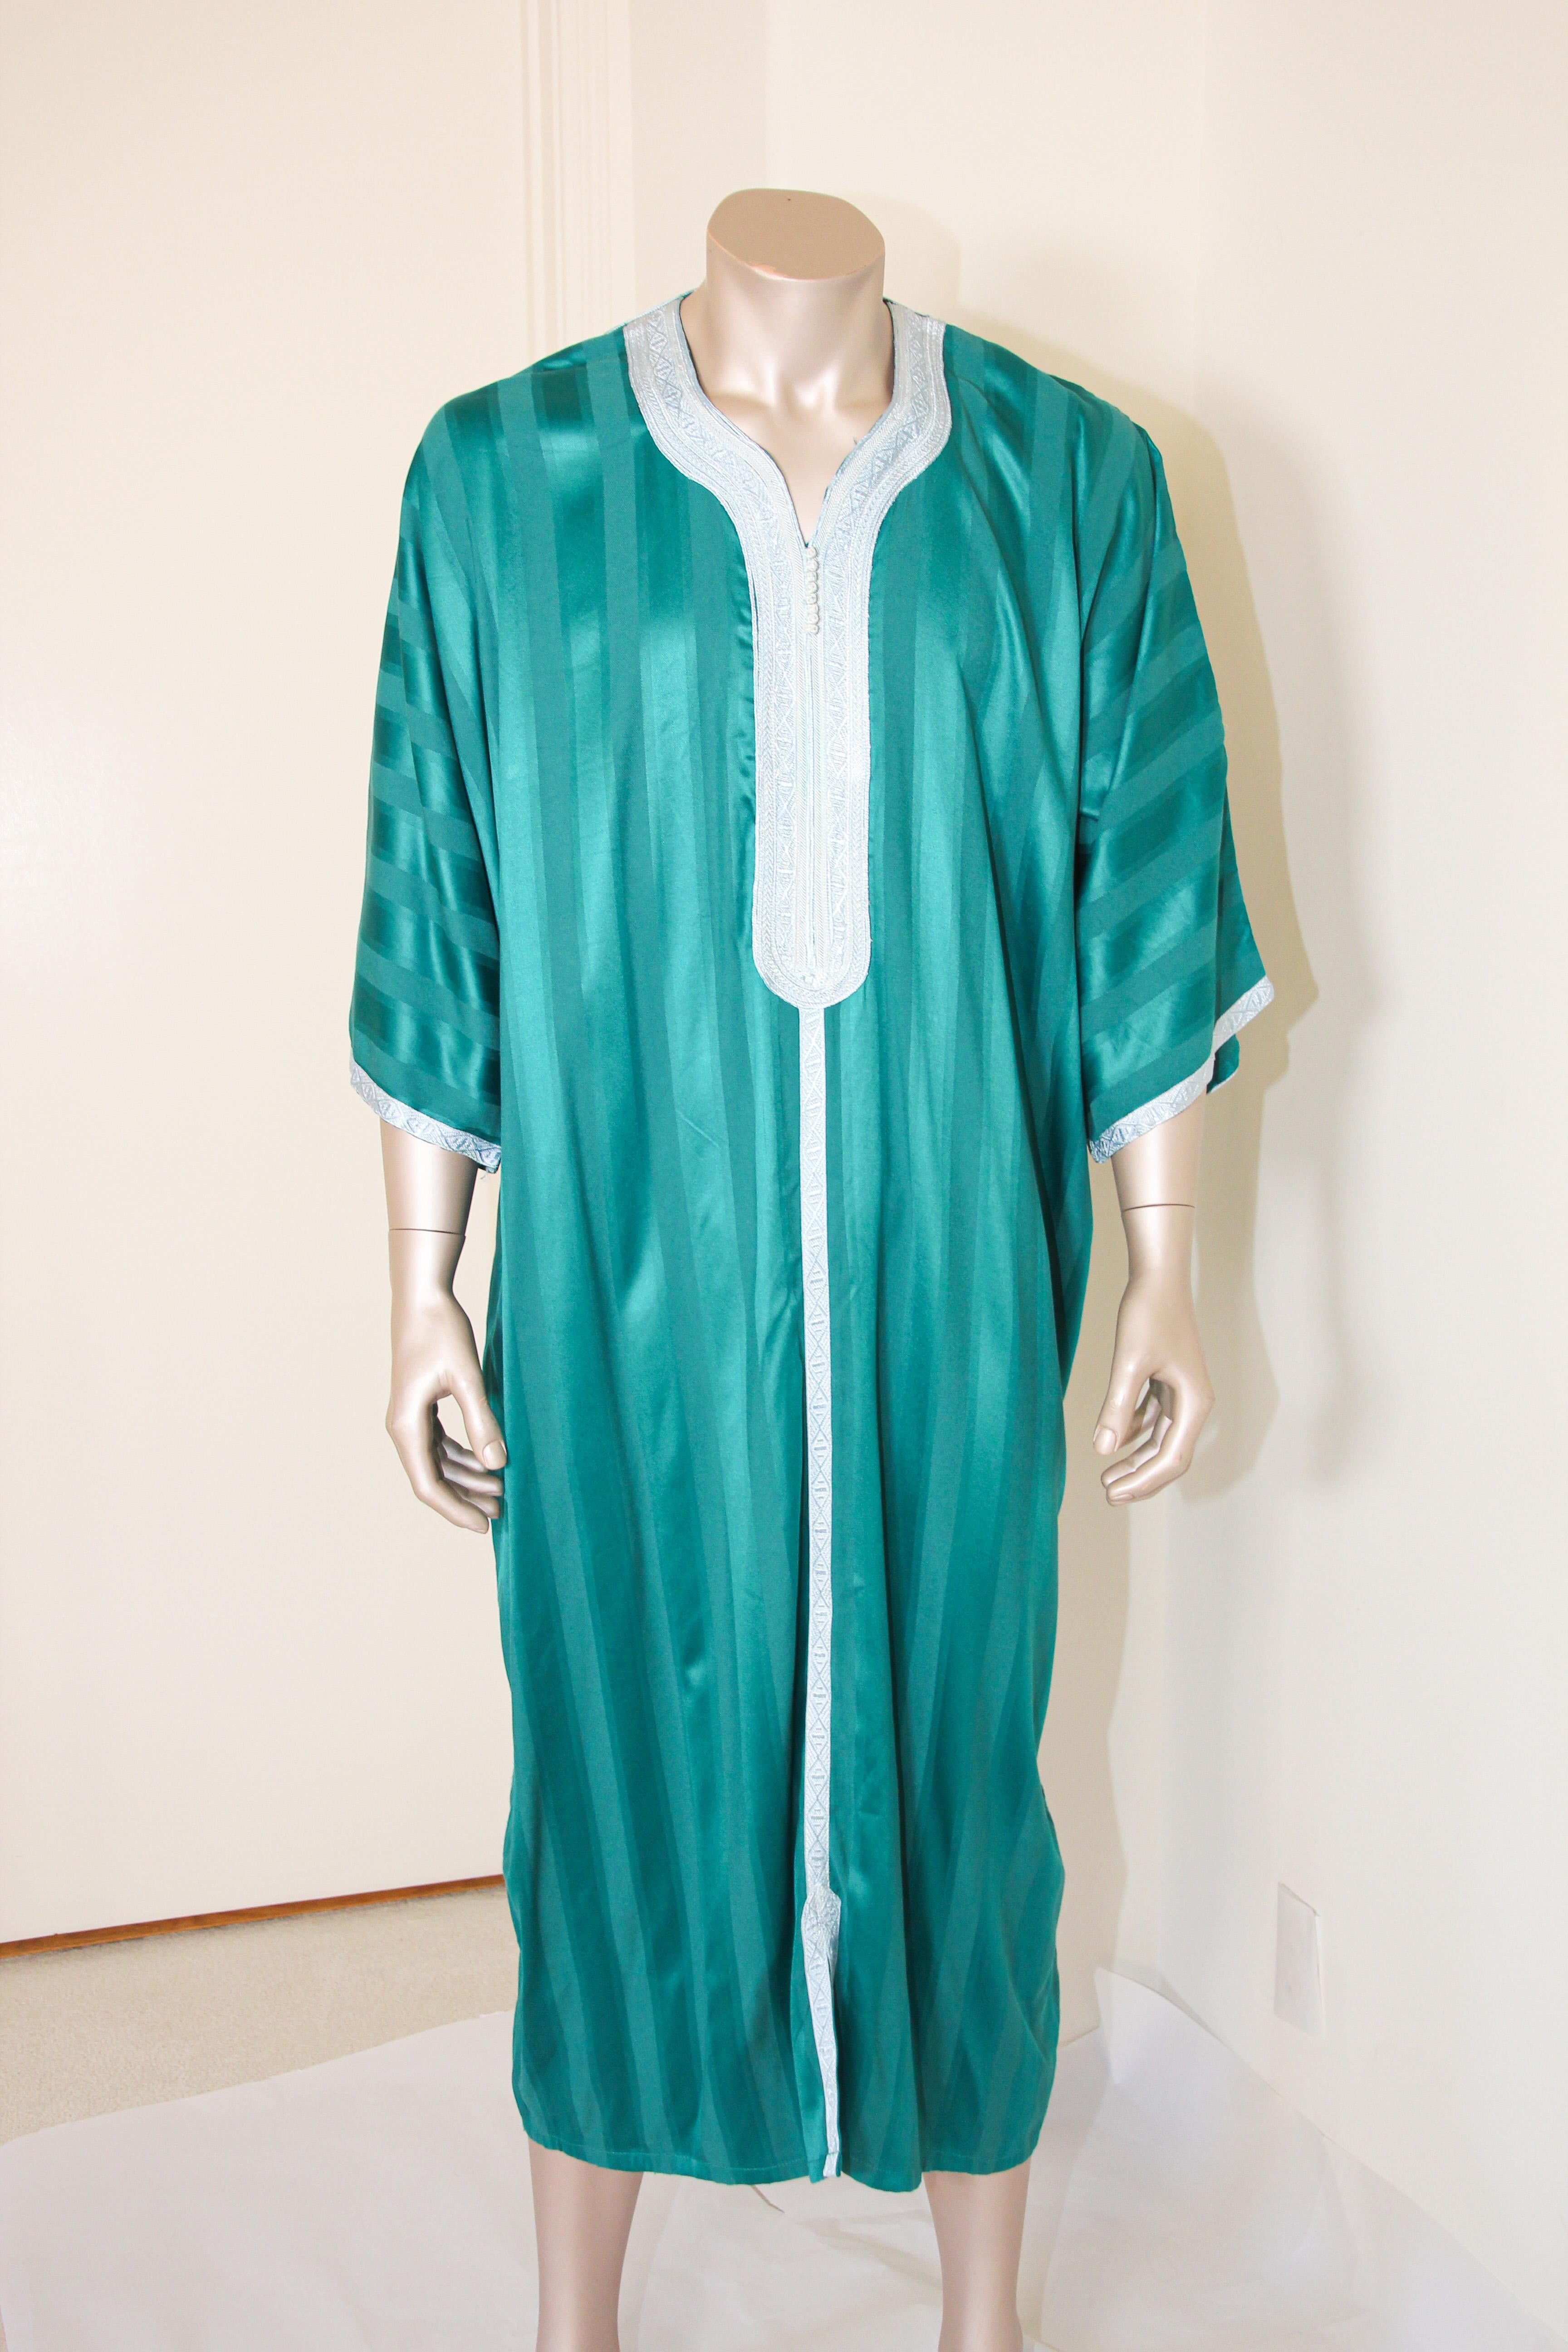 Caftan marocain vintage vert émeraude embelli d'une bordure brodée.
Au Maroc, la mode conserve son style traditionnel hérité des grandes civilisations qui ont trouvé leur chemin vers l'Afrique du Nord-Ouest, comme les Ottomans et les Maures.
La